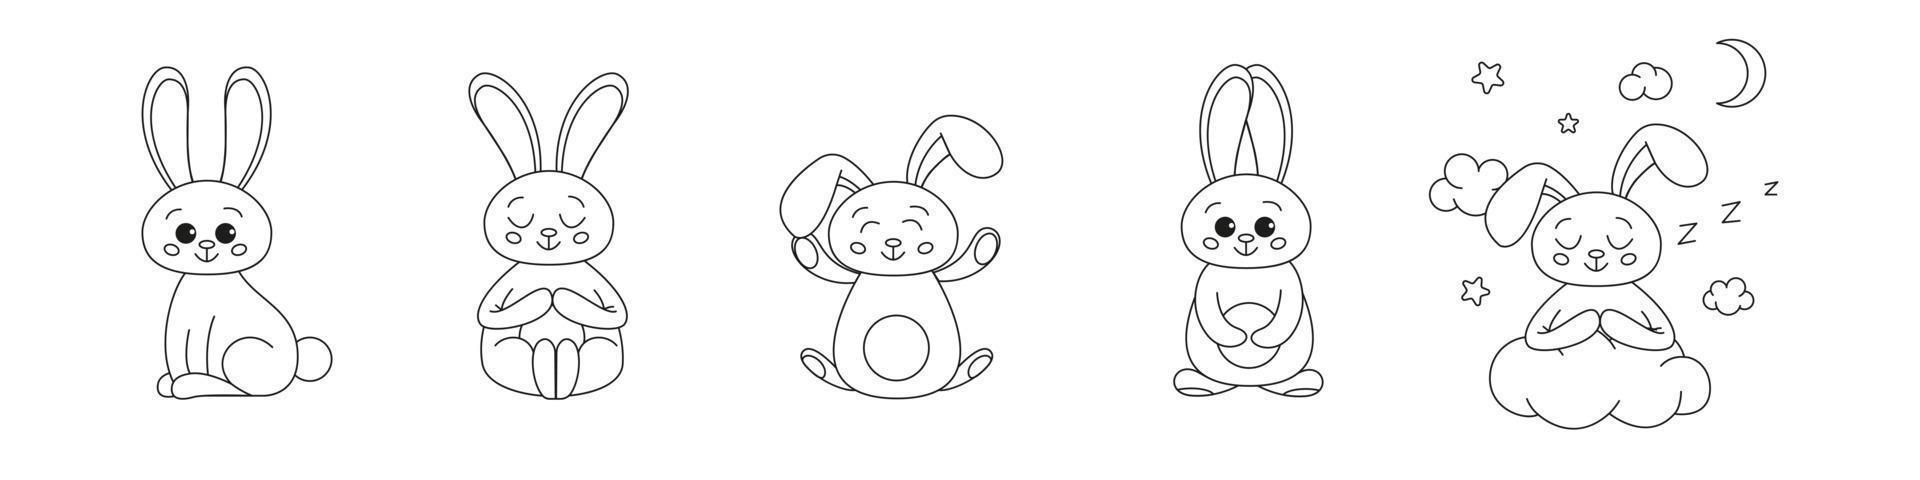 uppsättning av söta kontur kaniner, kanin för färgläggning. kaniner kaniner tecknad kontur målarbok eller sida för barn. glad påsk i doodle stil. illustration vektor. vektor